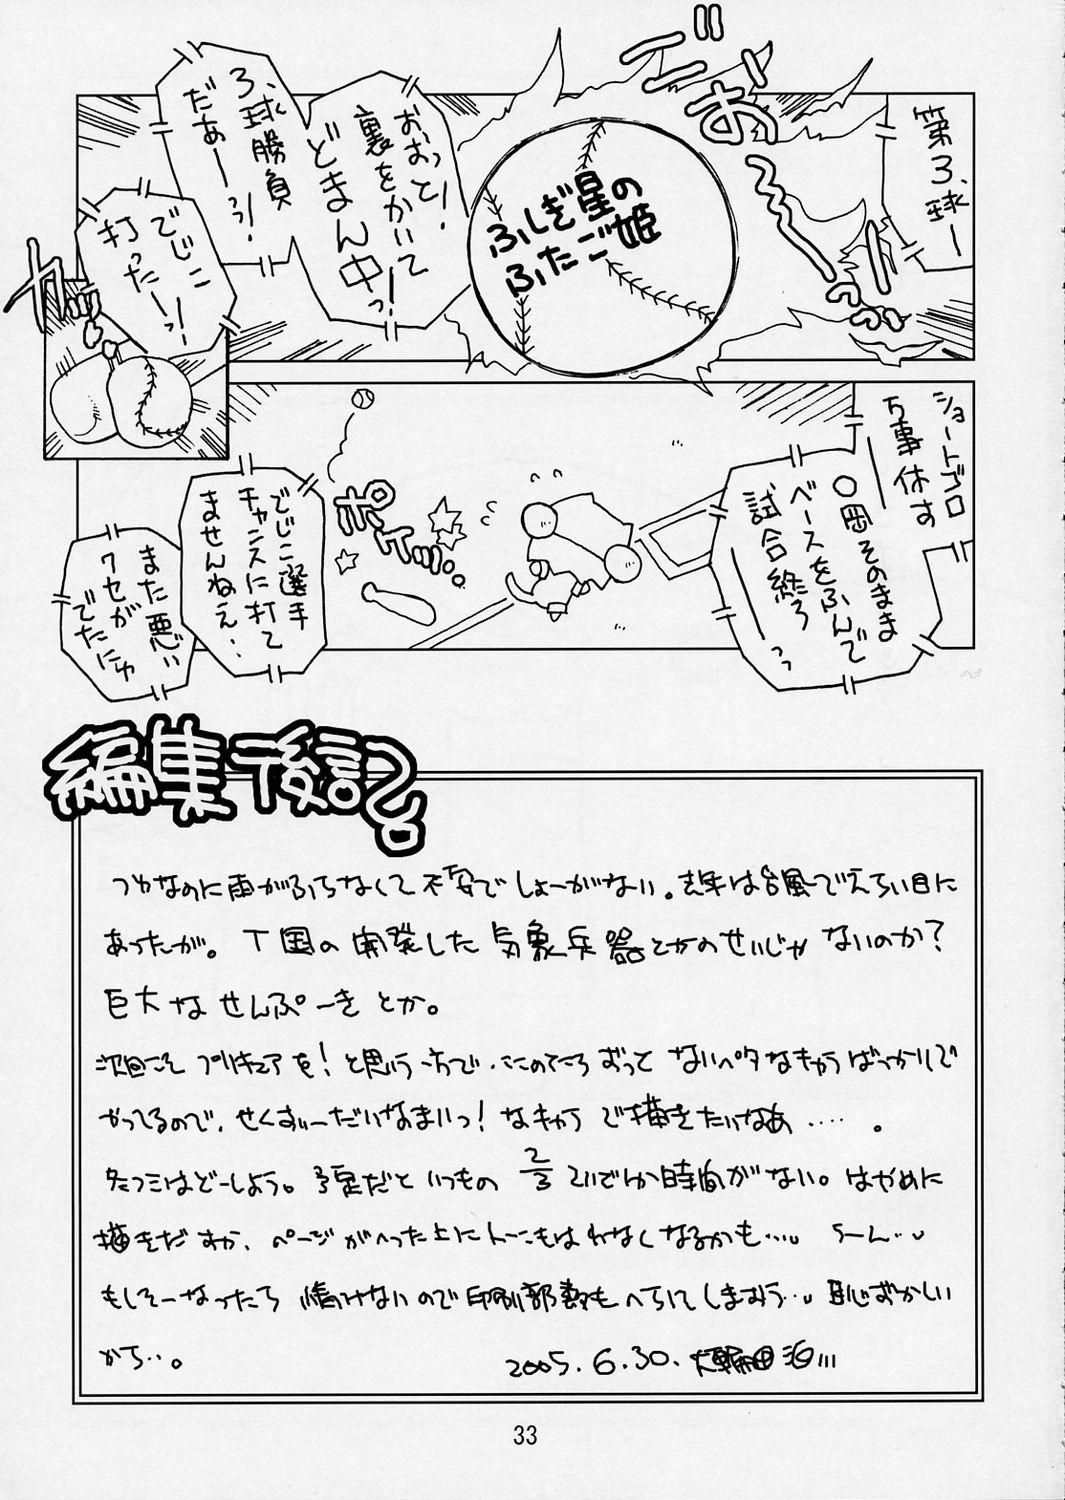 Juicy Punipuni Princess - Fushigiboshi no futagohime Stud - Page 33